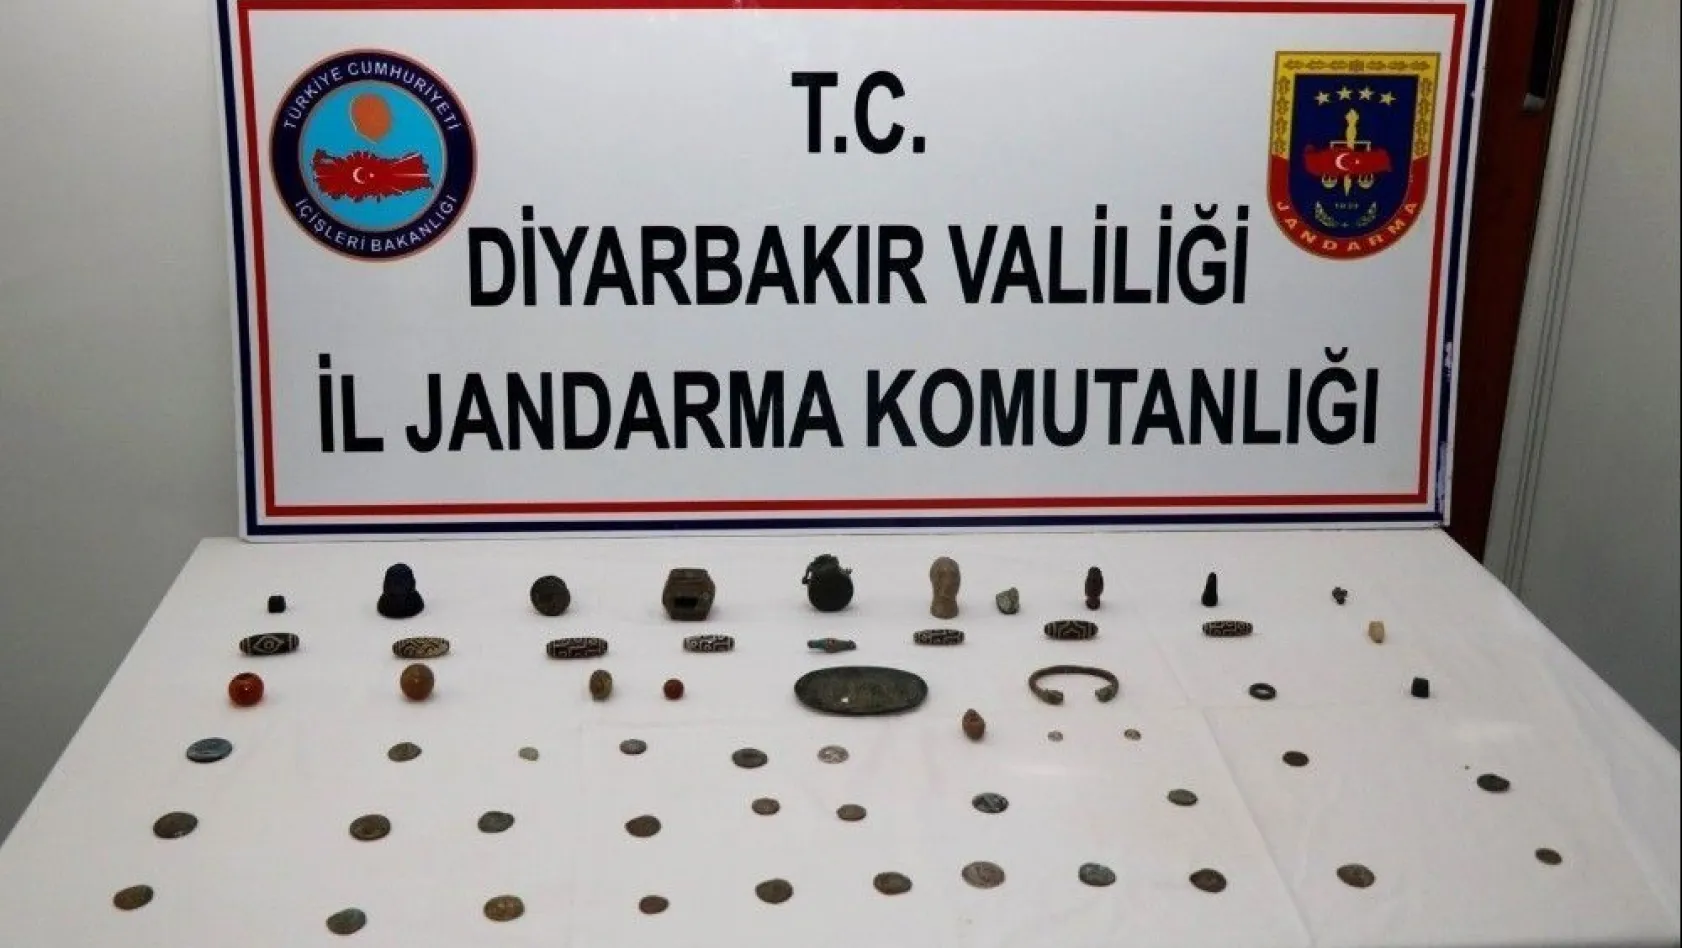 Diyarbakır'da tarihi eser kaçakçıları suçüstü yakalandı
